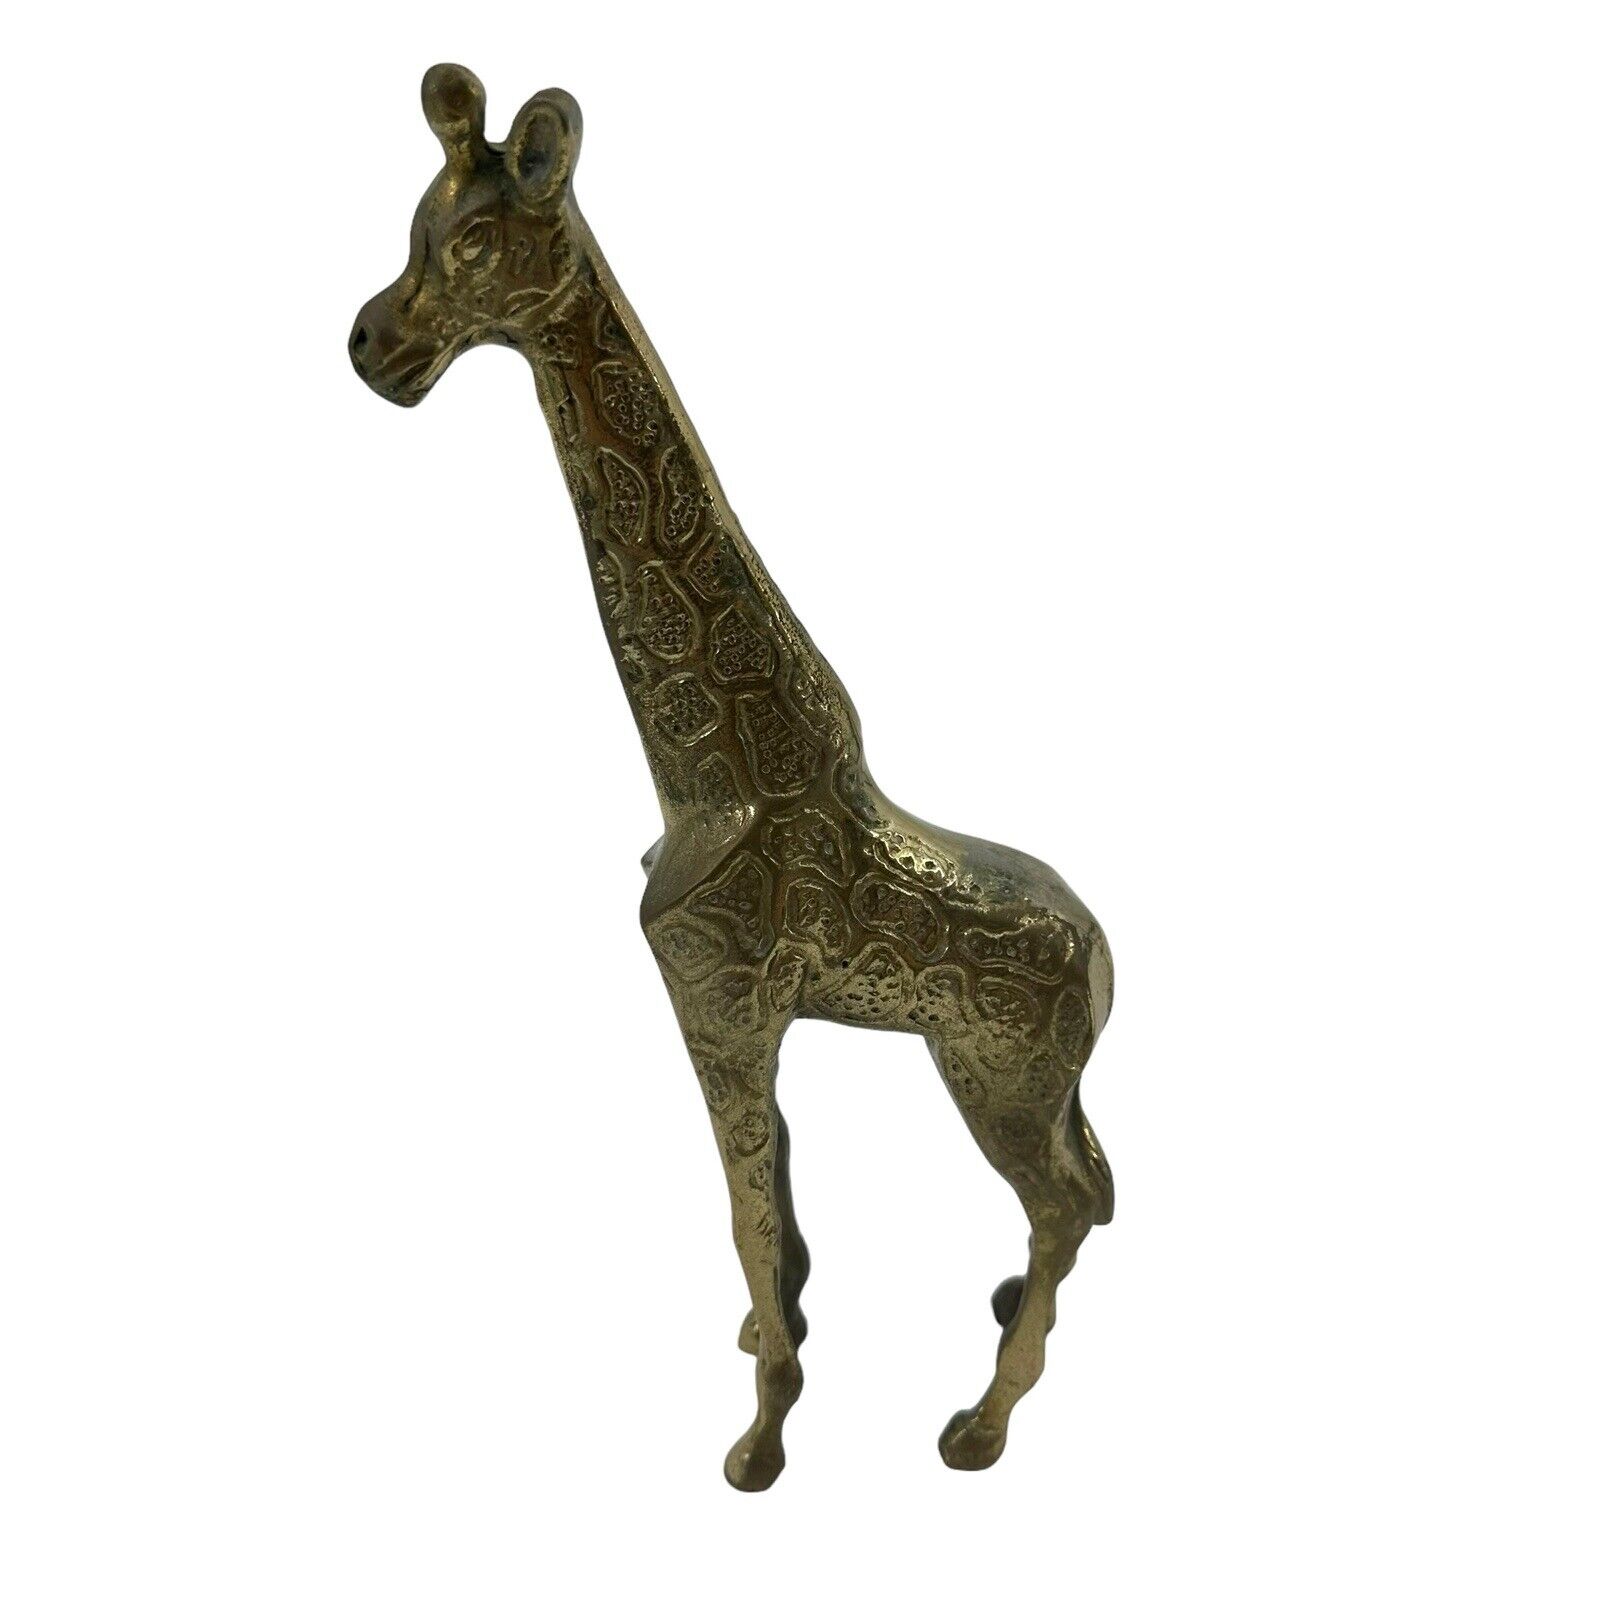 Vintage Solid Brass Giraffe Tall Solid 12” Tall safari statue patina